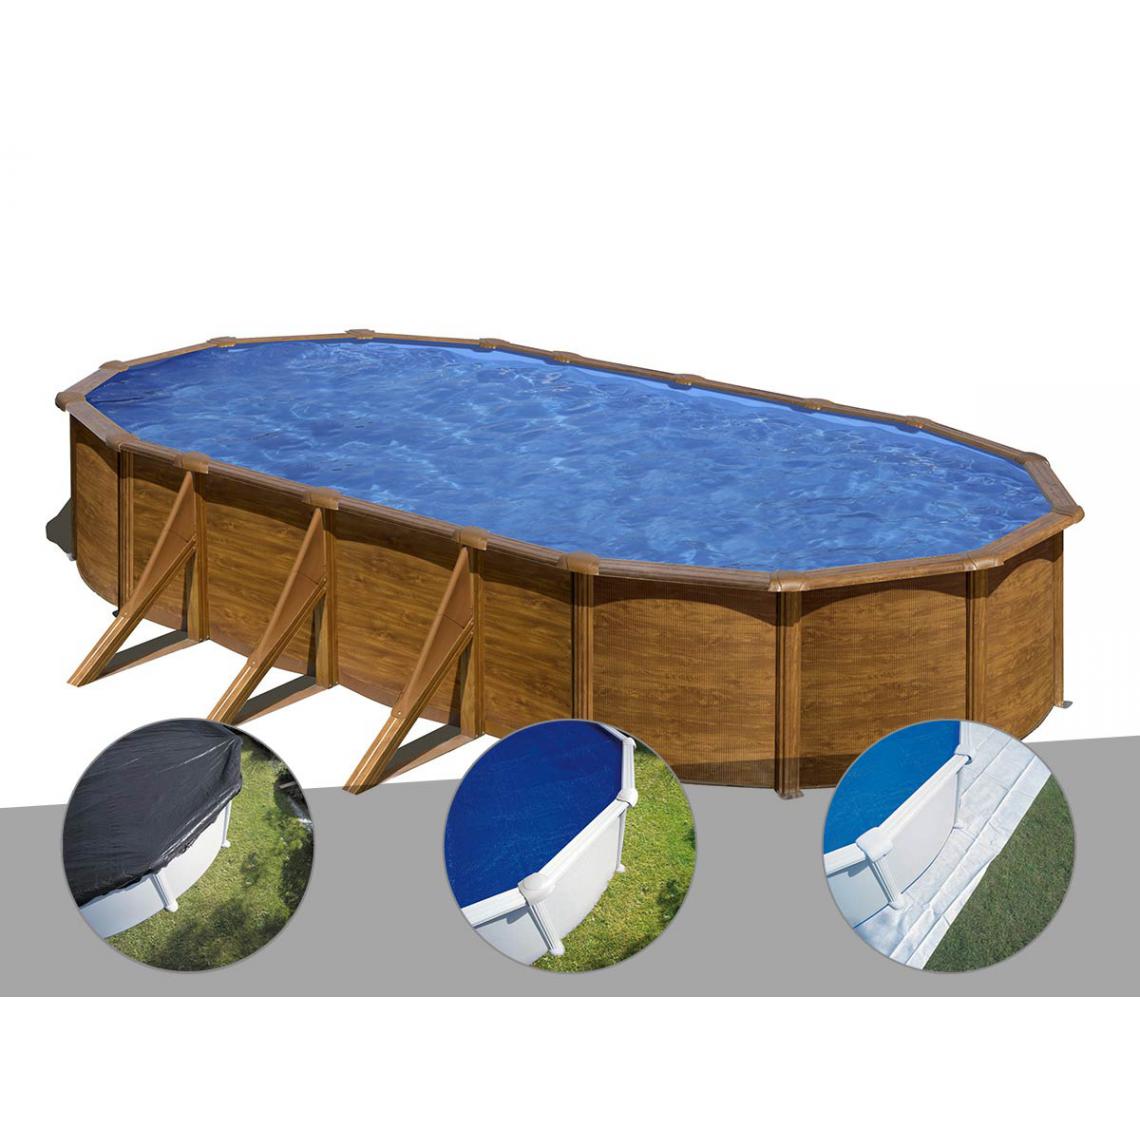 Gre - Kit piscine acier aspect bois Gré Pacific ovale 7,44 x 3,99 x 1,22 m + Bâche d'hivernage + Bâche à bulles + Tapis de sol - Piscines acier et résine